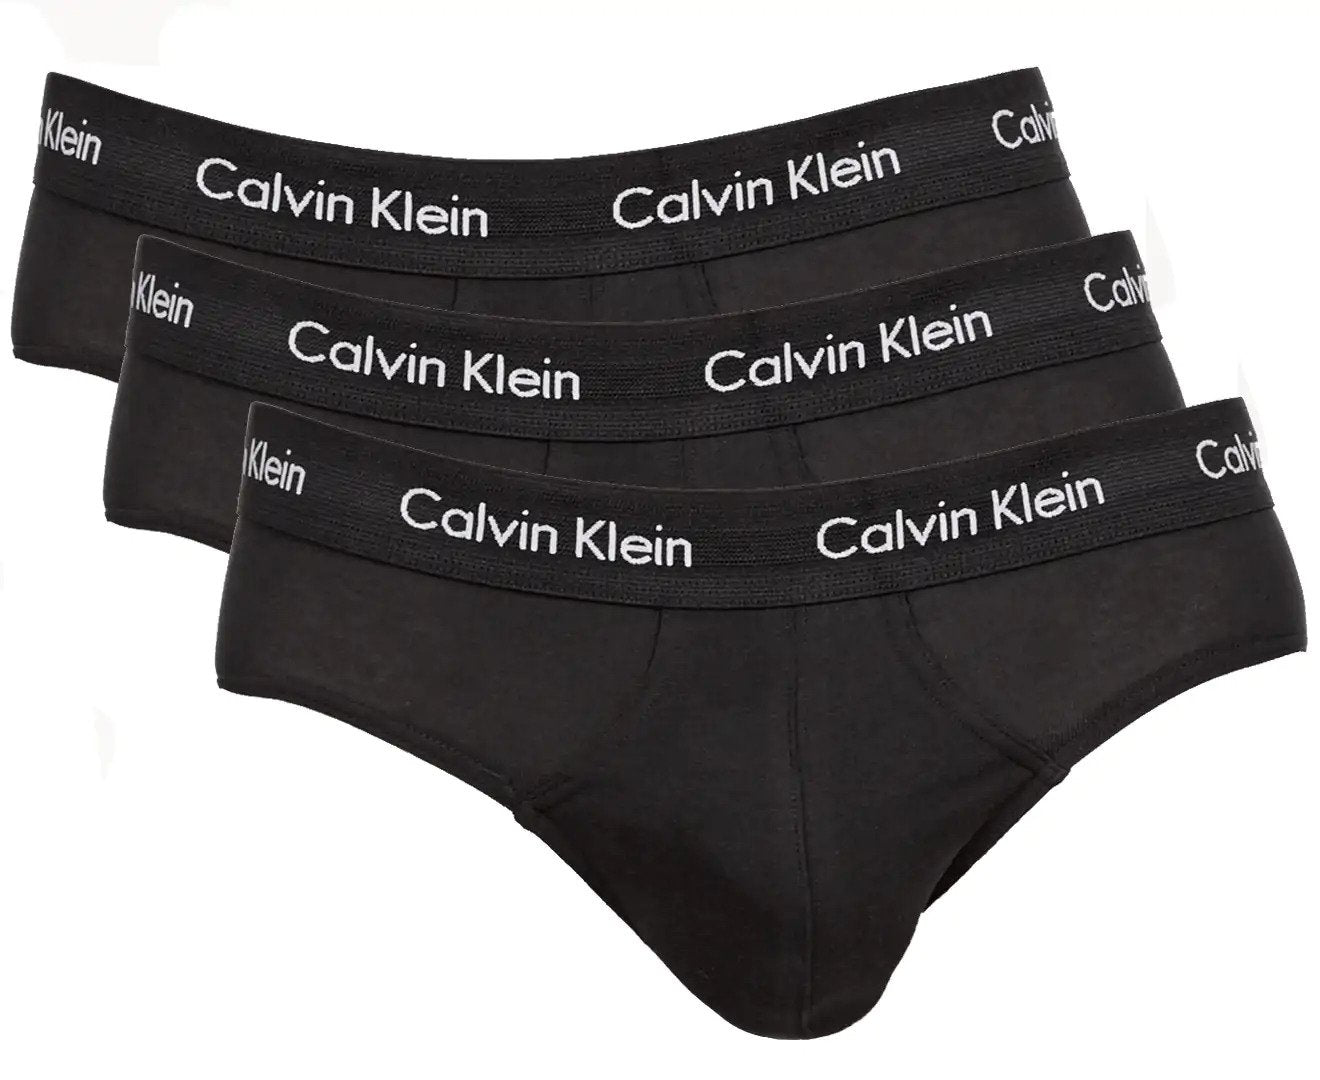 Calvin Klein Men's Underwear Cotton Stretch Hip Brief 3 Pack, Black/Black/Black